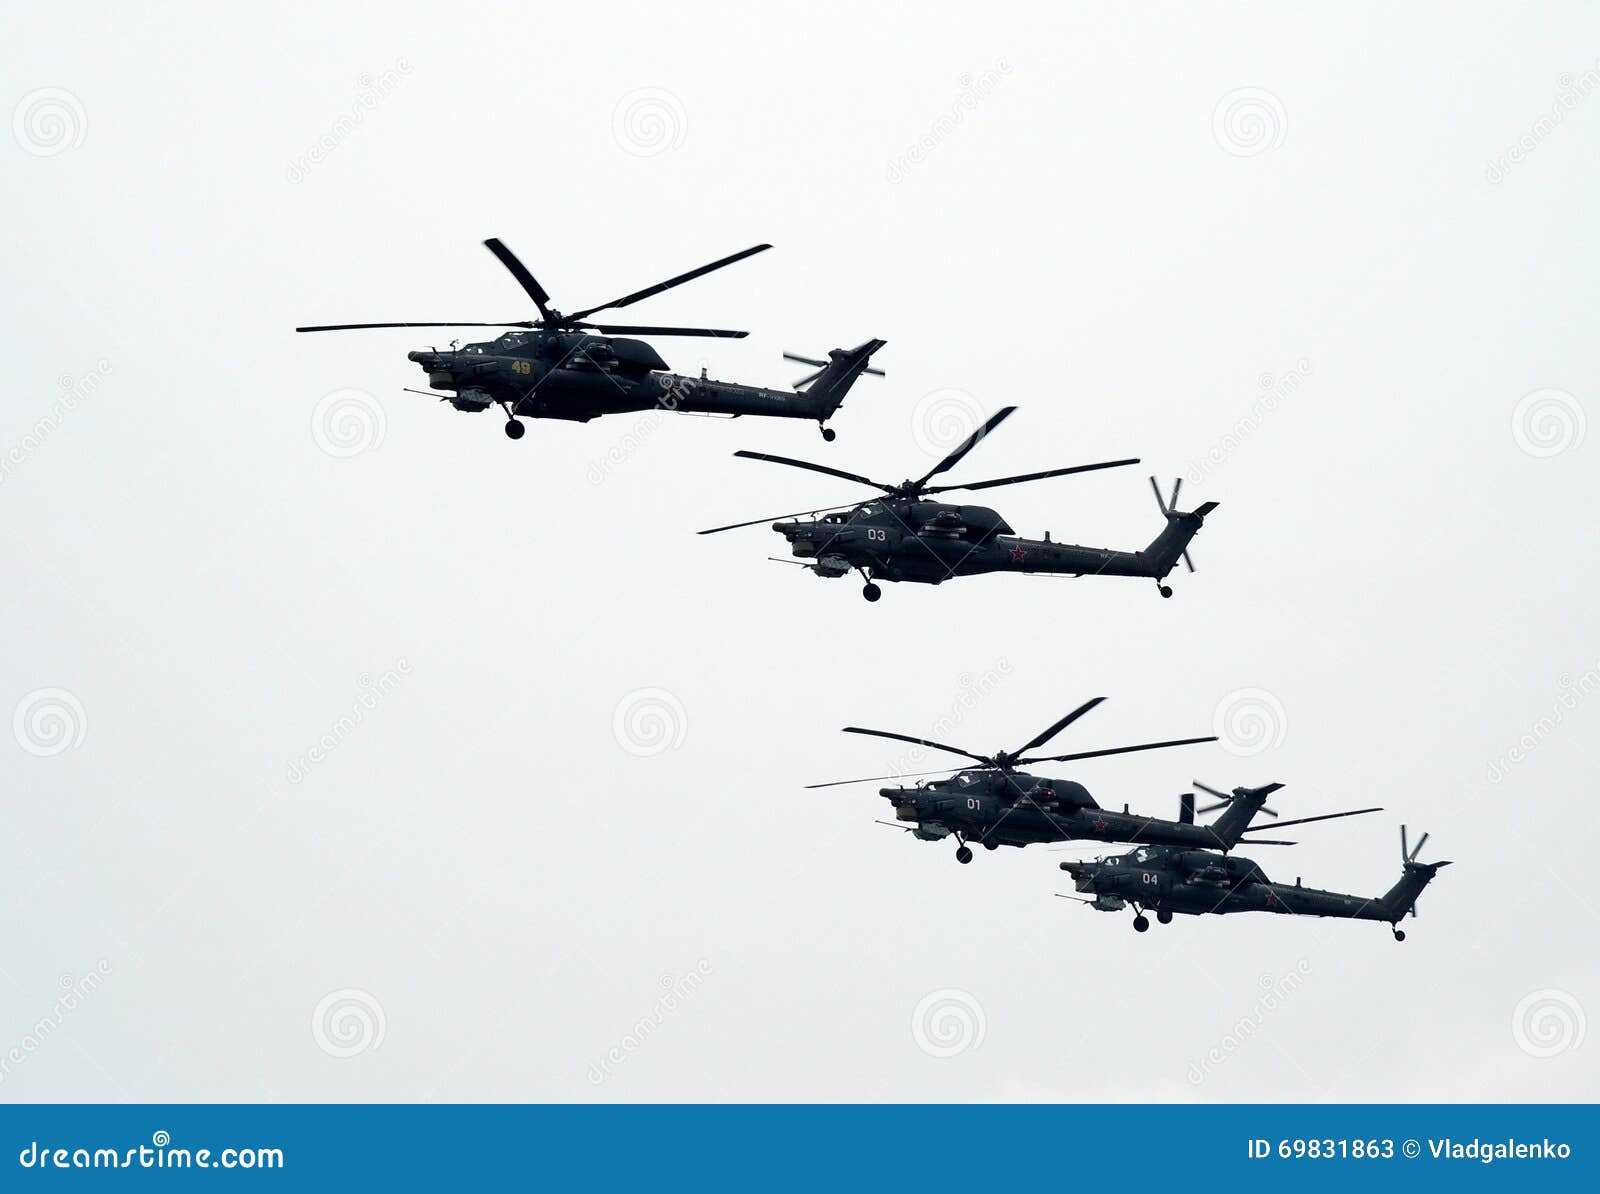 El grupo de la milipulgada Mi-28 es un para todo clima ruso, día-noche, tándem militar, helicópteros de ataque de la anti-armadur. ZHUKOVSKY, RUSIA - 30 DE AGOSTO DE 2013: El grupo de la milipulgada Mi-28 (estrago) es un para todo clima ruso, día-noche, tándem militar, helicópteros de ataque de la anti-armadura de dos-Seat en el aire